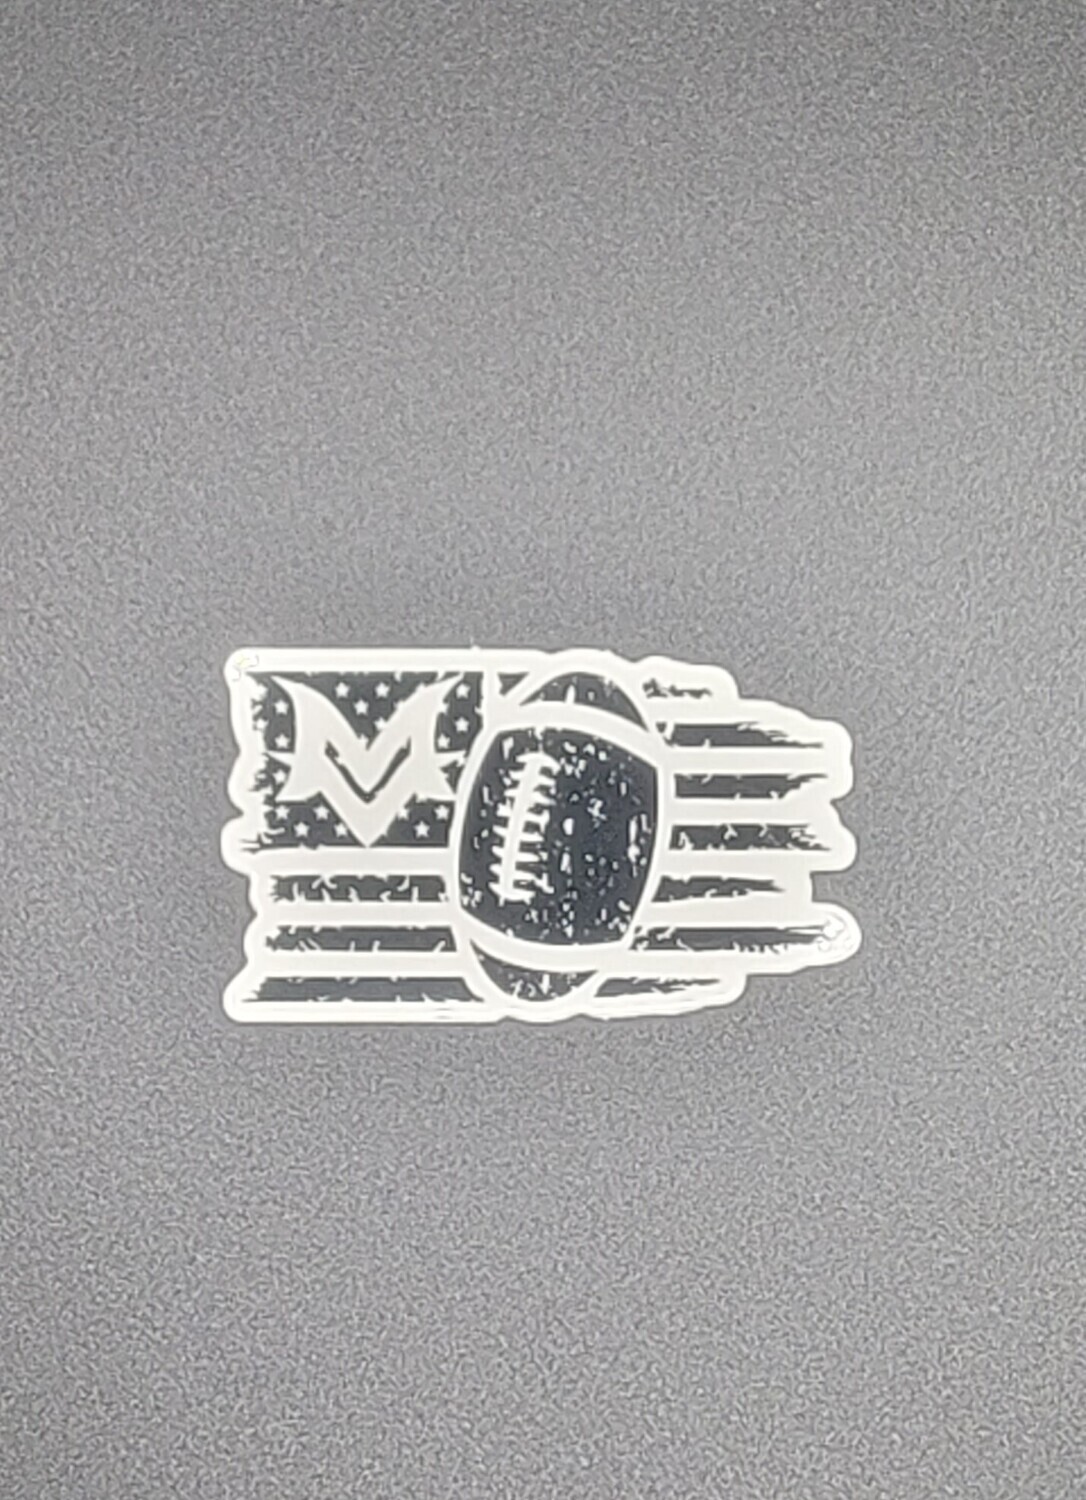 Sticker - MVFB019 - MINI